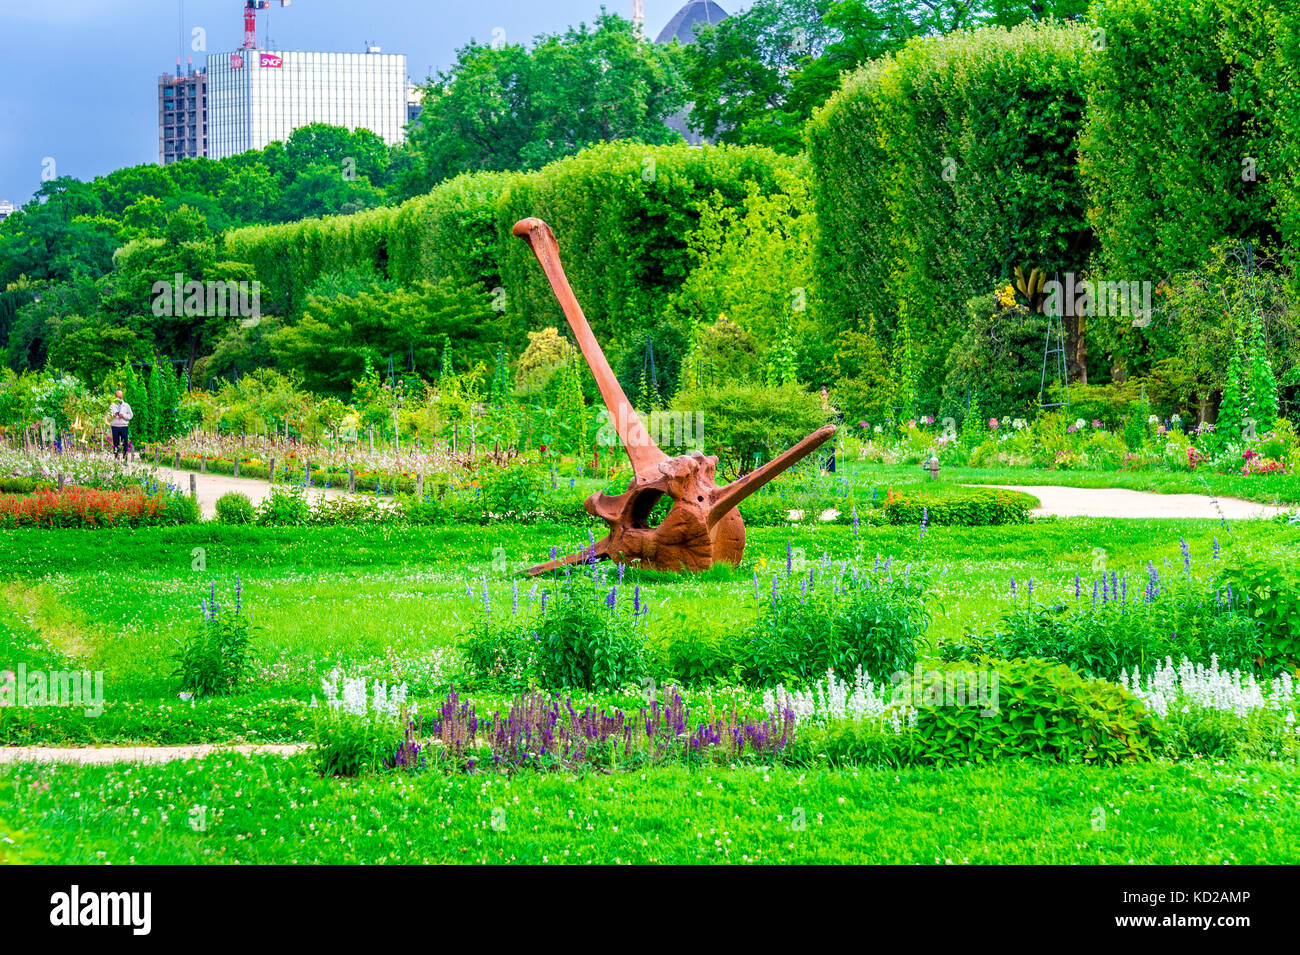 Ein riesiger verrosteter Anker ist ein Kunststück im Jardin des plantes in Paris, Frankreich Stockfoto